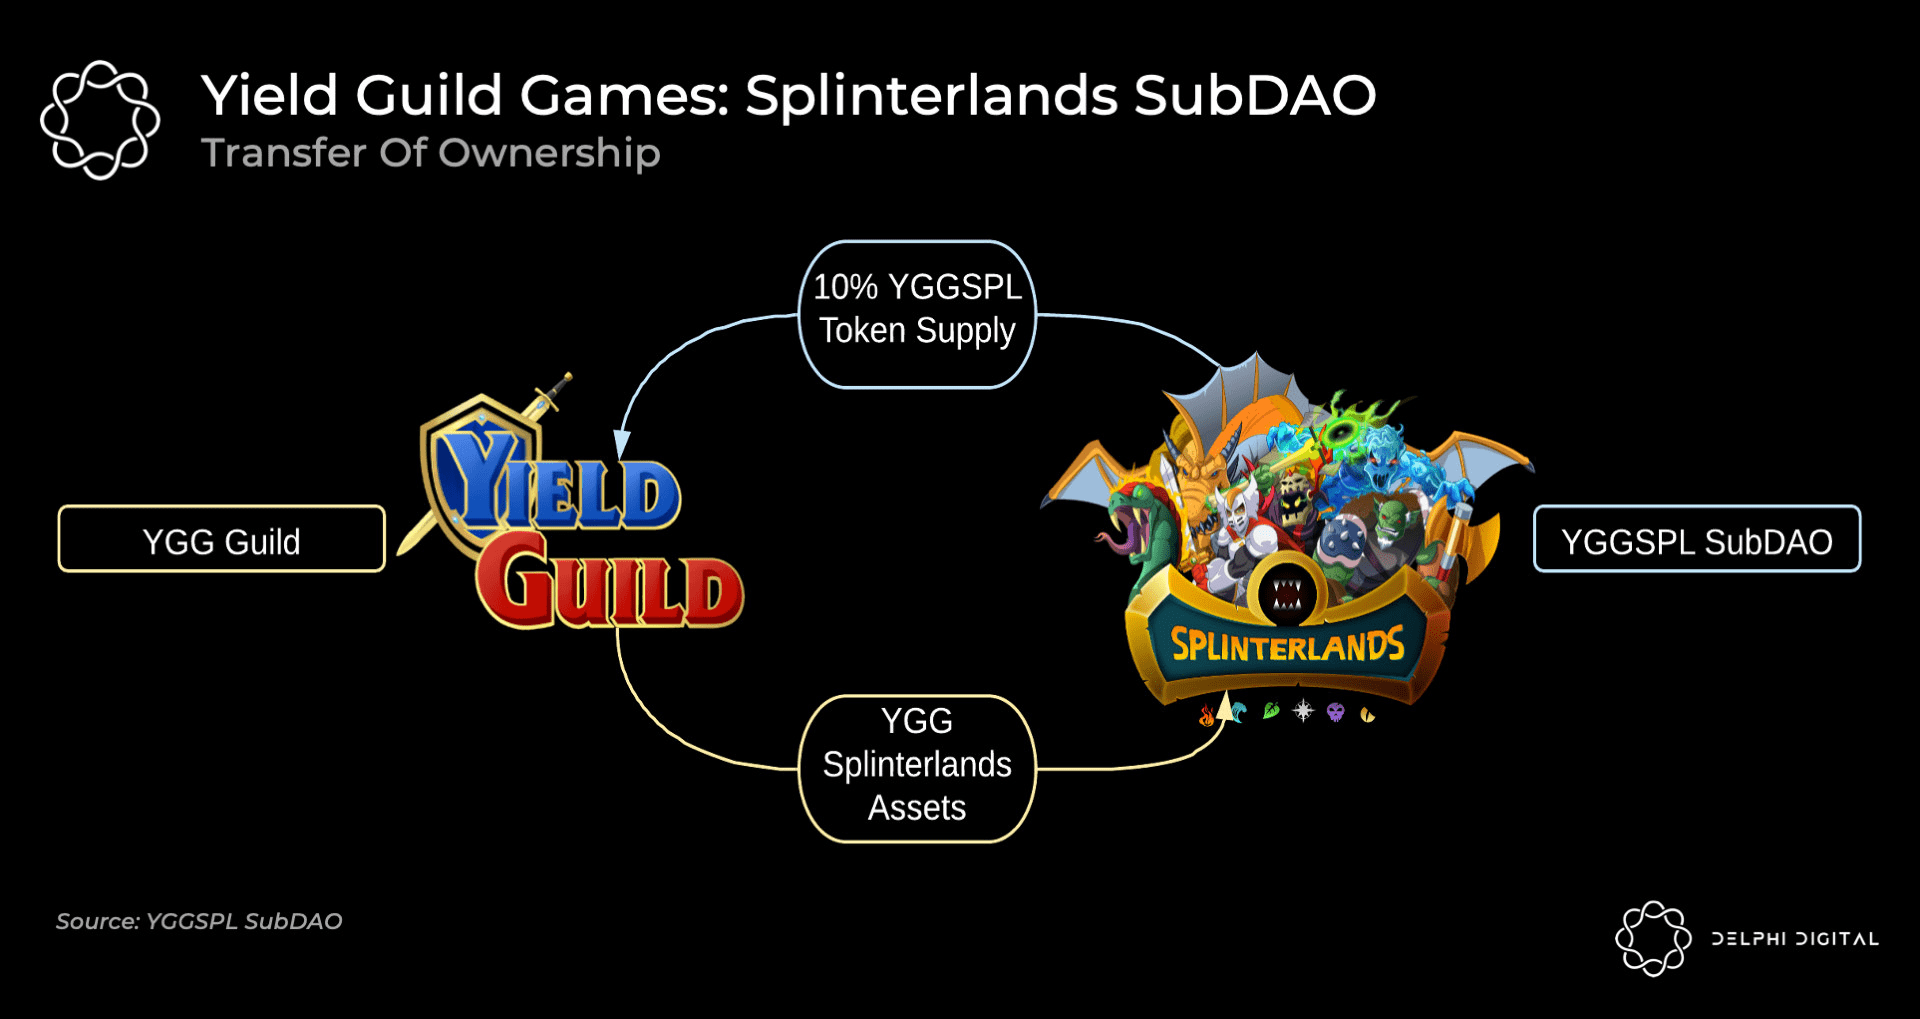 Splinterlands và sự xuất hiện của Yield Guild SubDAOs